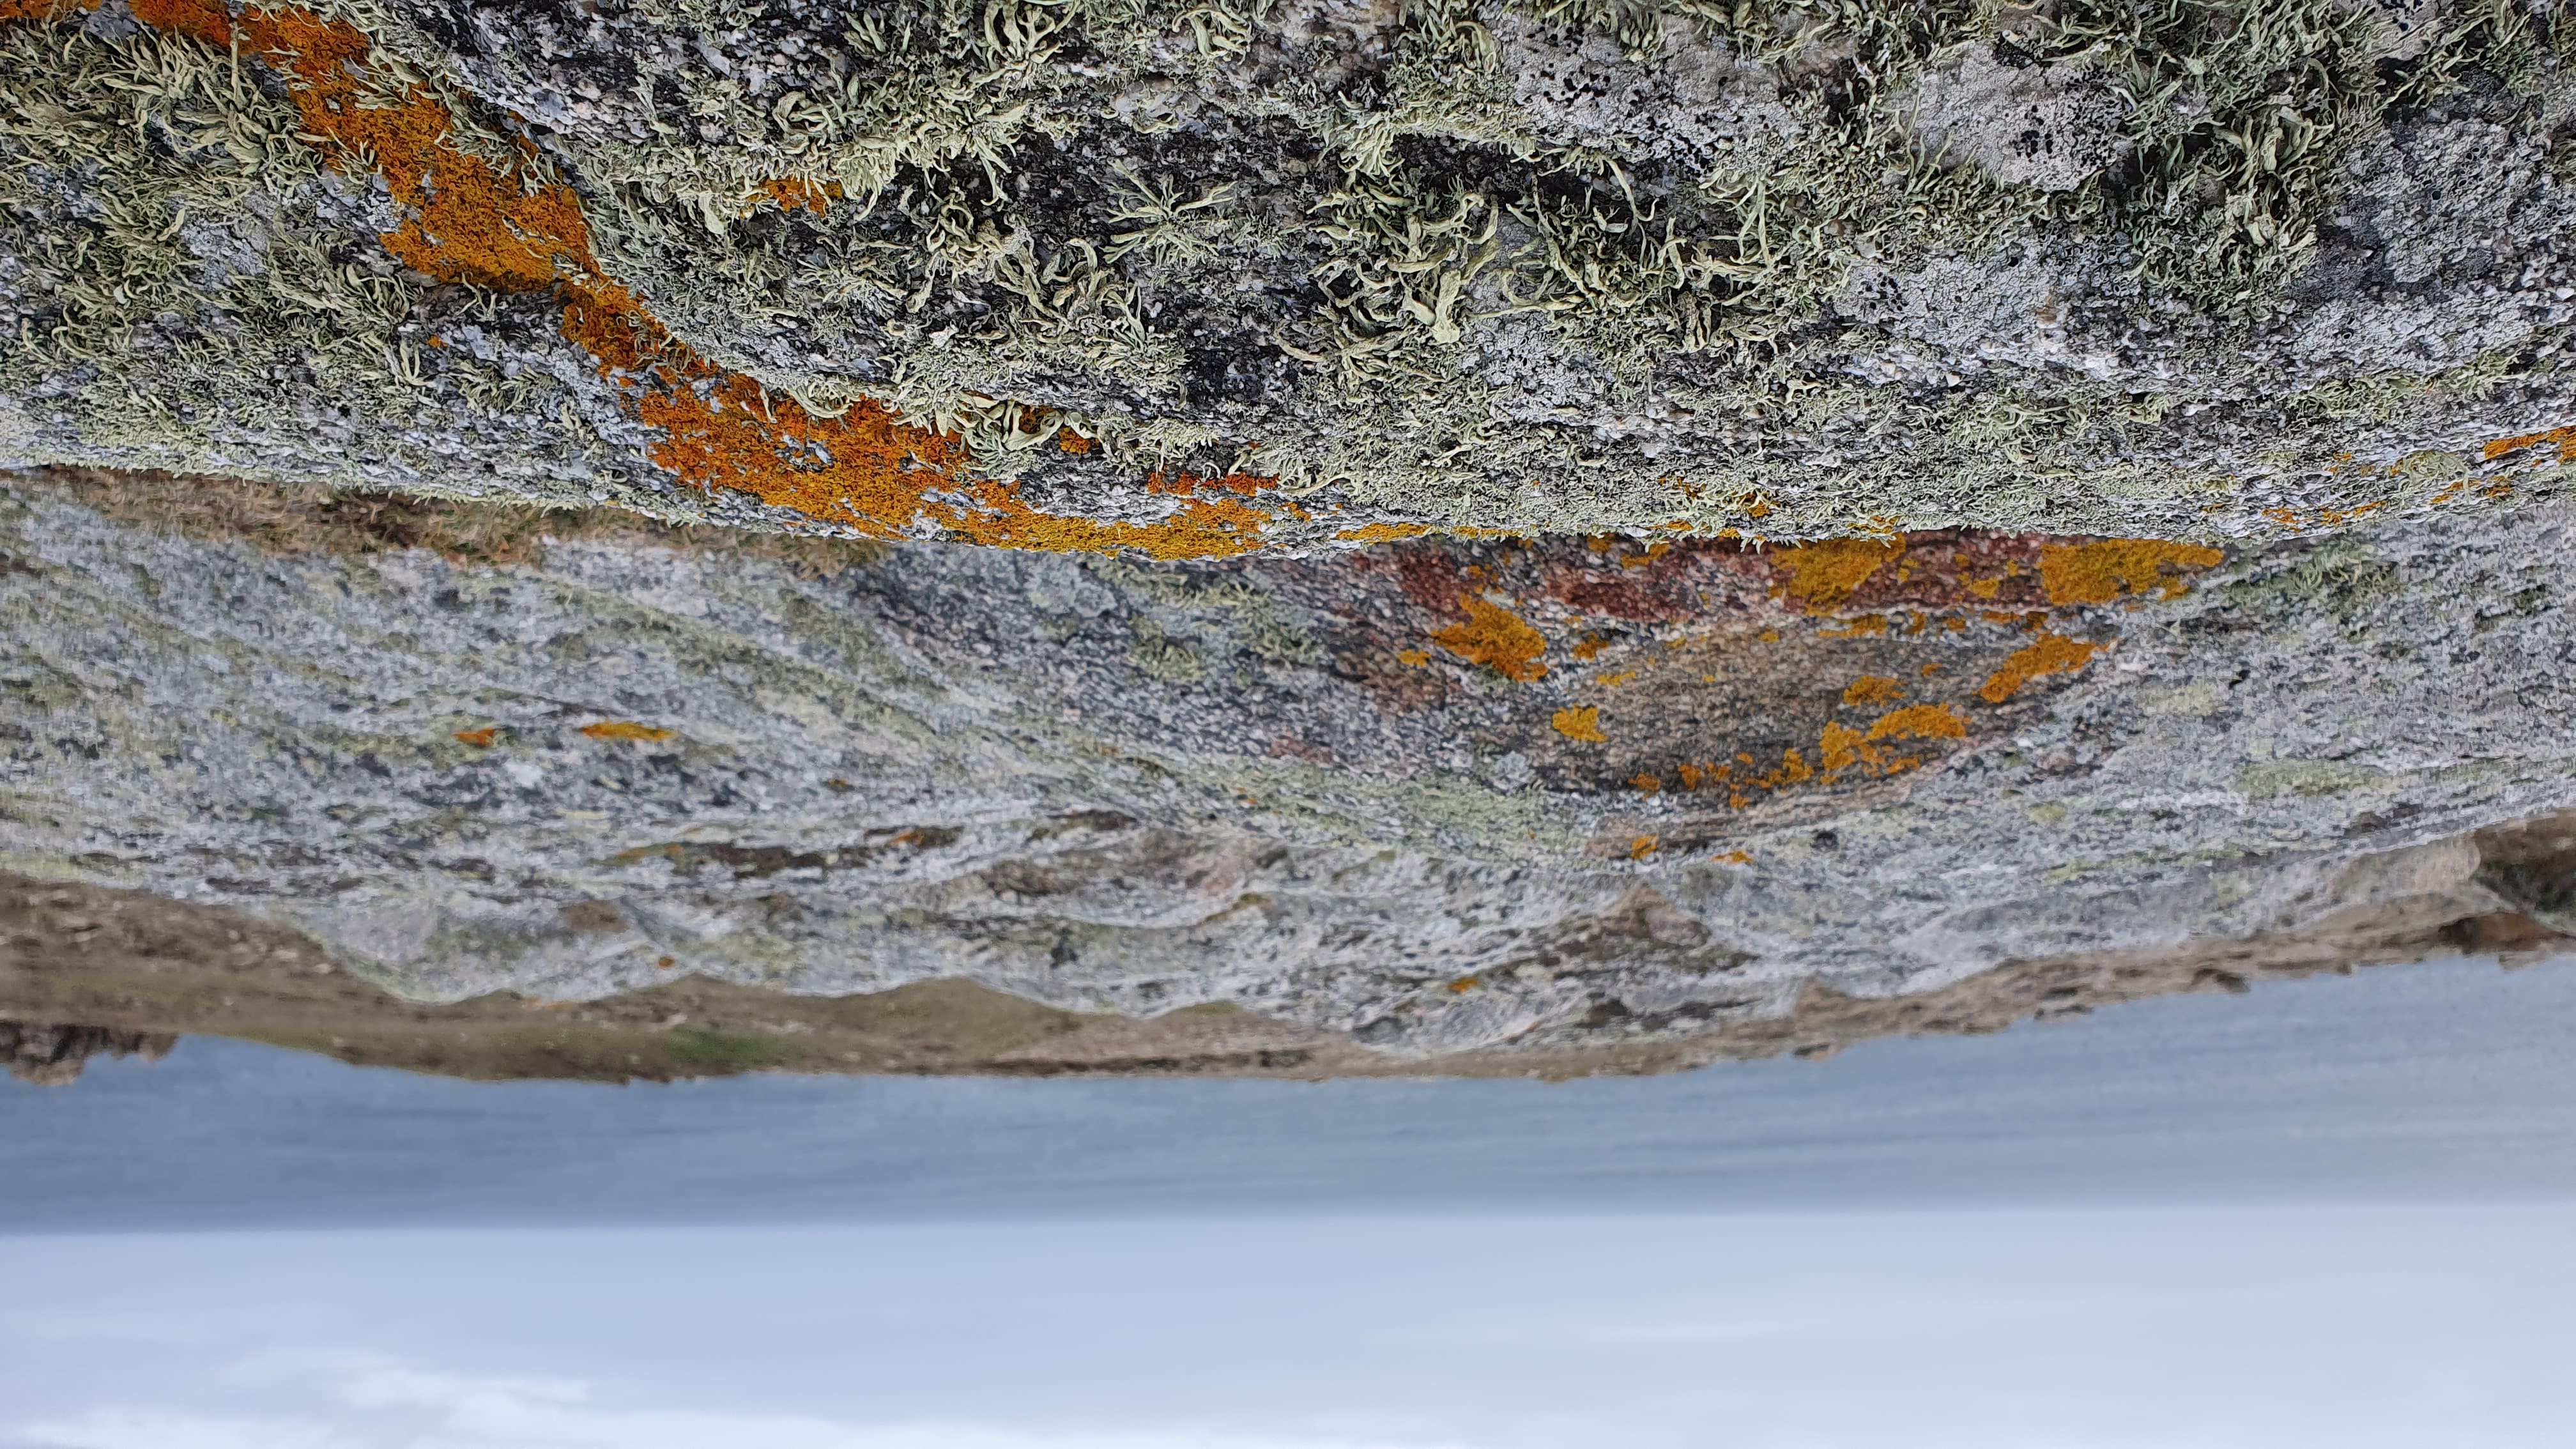 les lichens